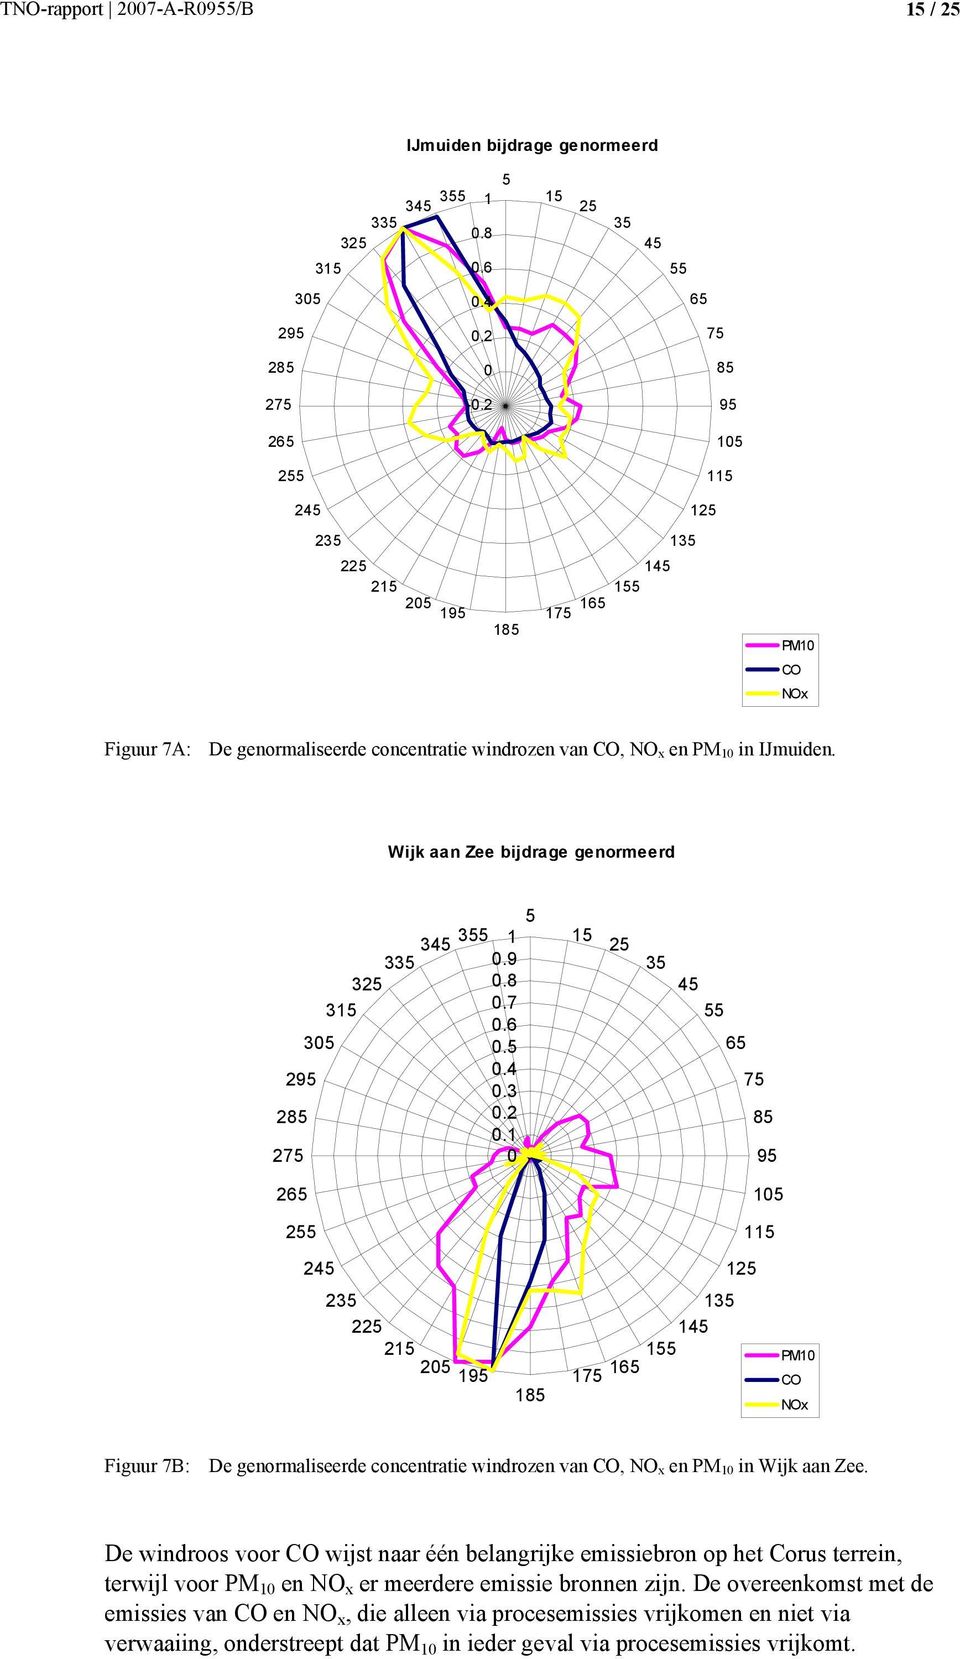 3.2.1 2 1 2 1 1 1 1 1 1 1 PM1 CO NOx Figuur 7B: De genormaliseerde concentratie windrozen van CO, NO x en PM 1 in Wijk aan Zee.